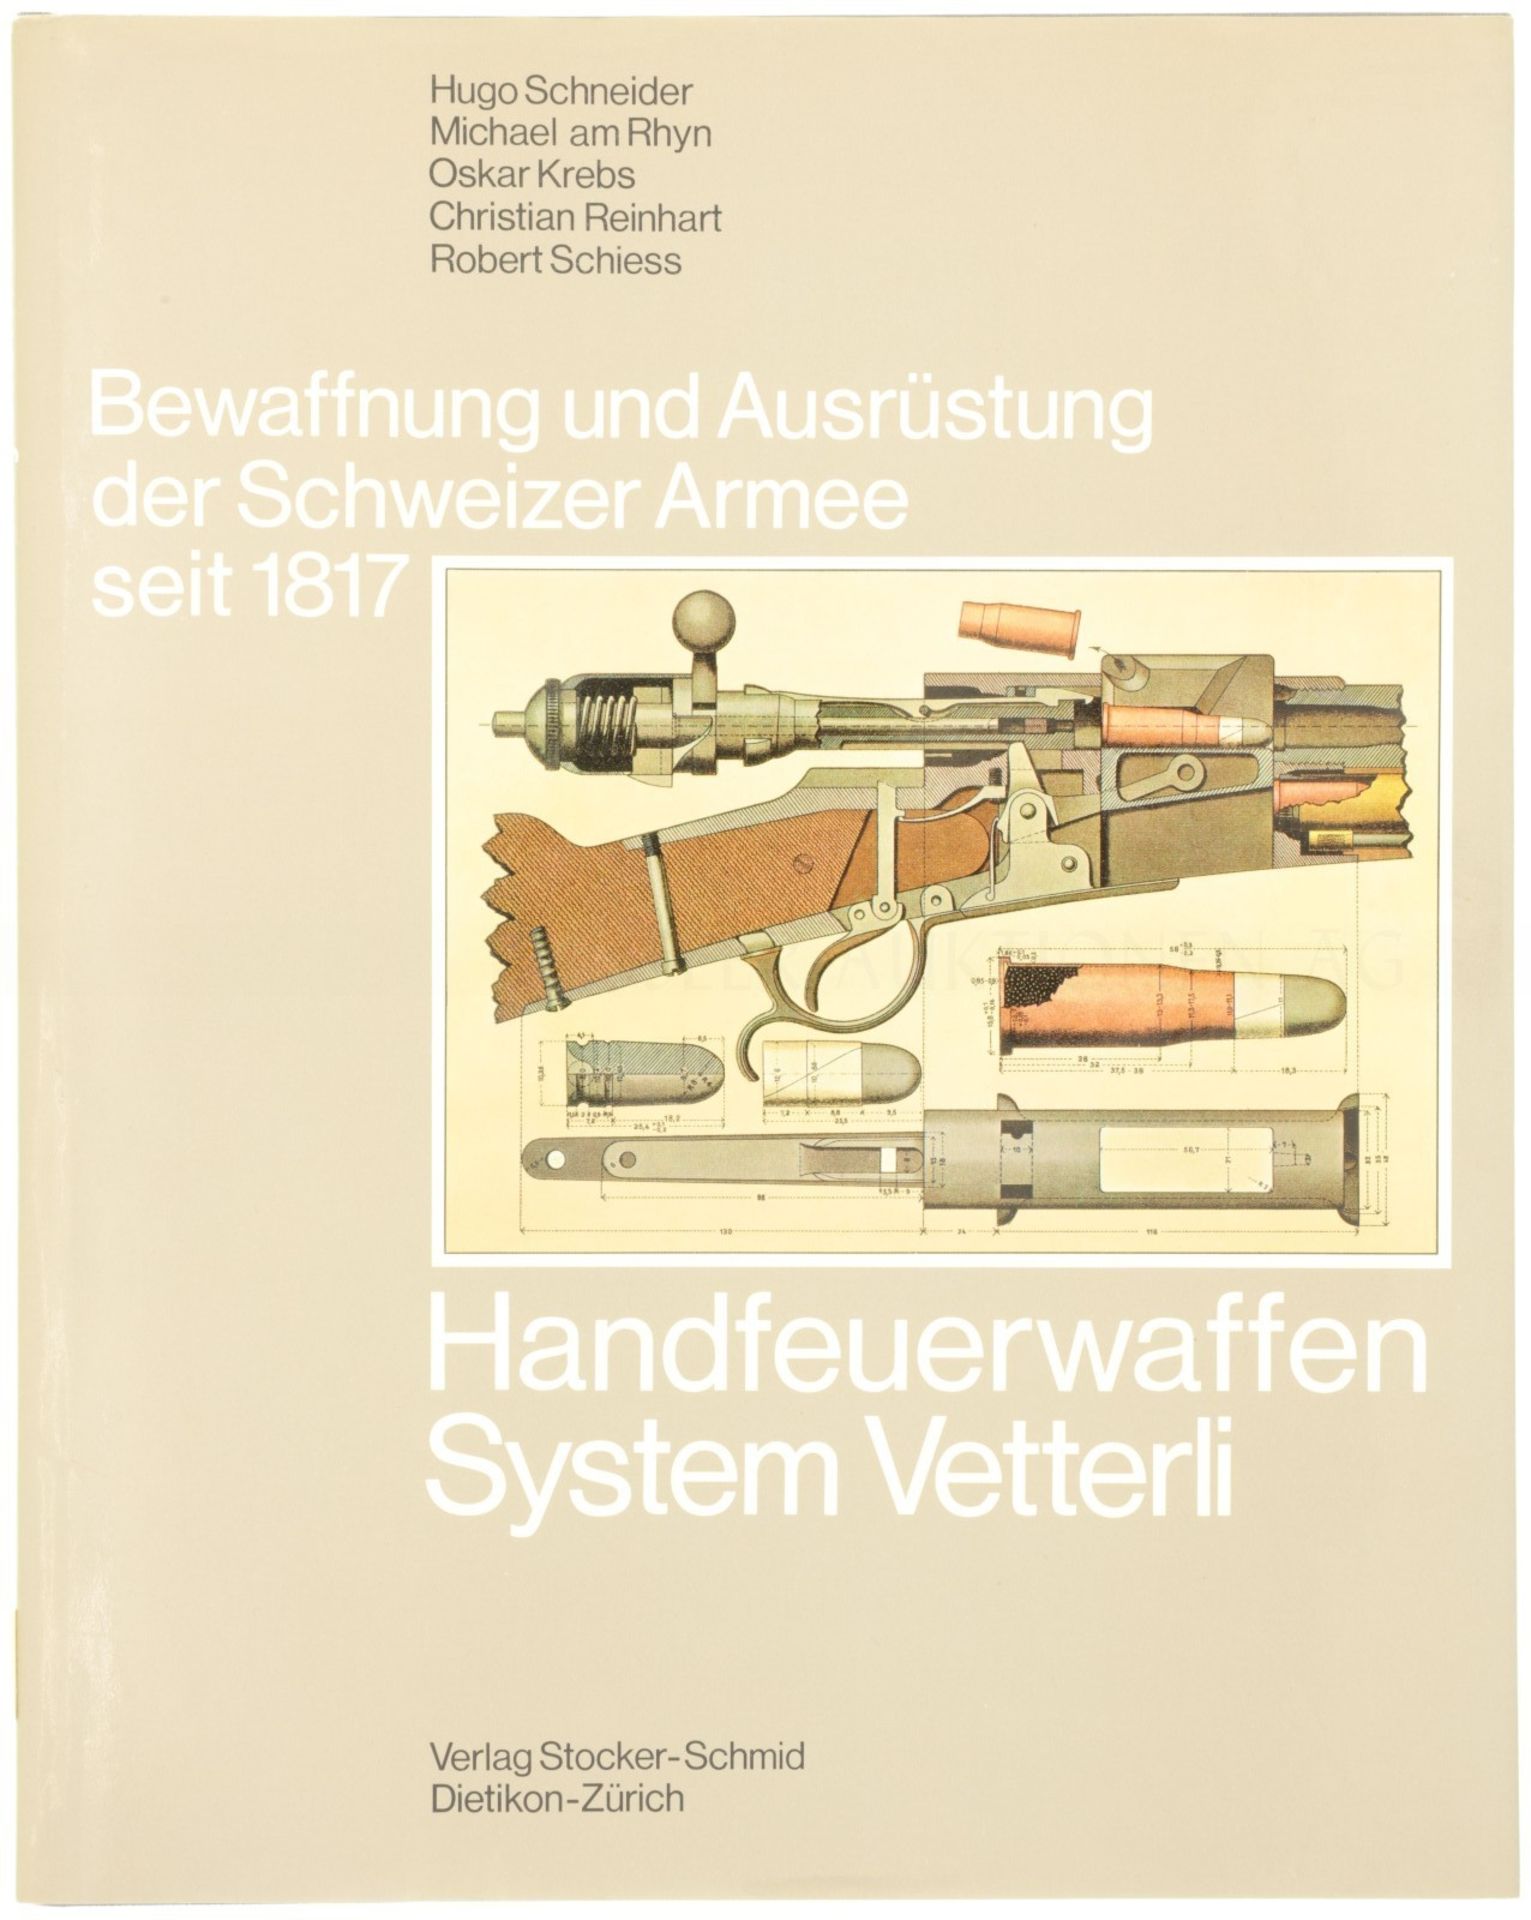 Handfeuerwaffen System Vetterli, Band 3 aus der Reihe "Bewaffnung und Ausrüstung der Schweizer Armee